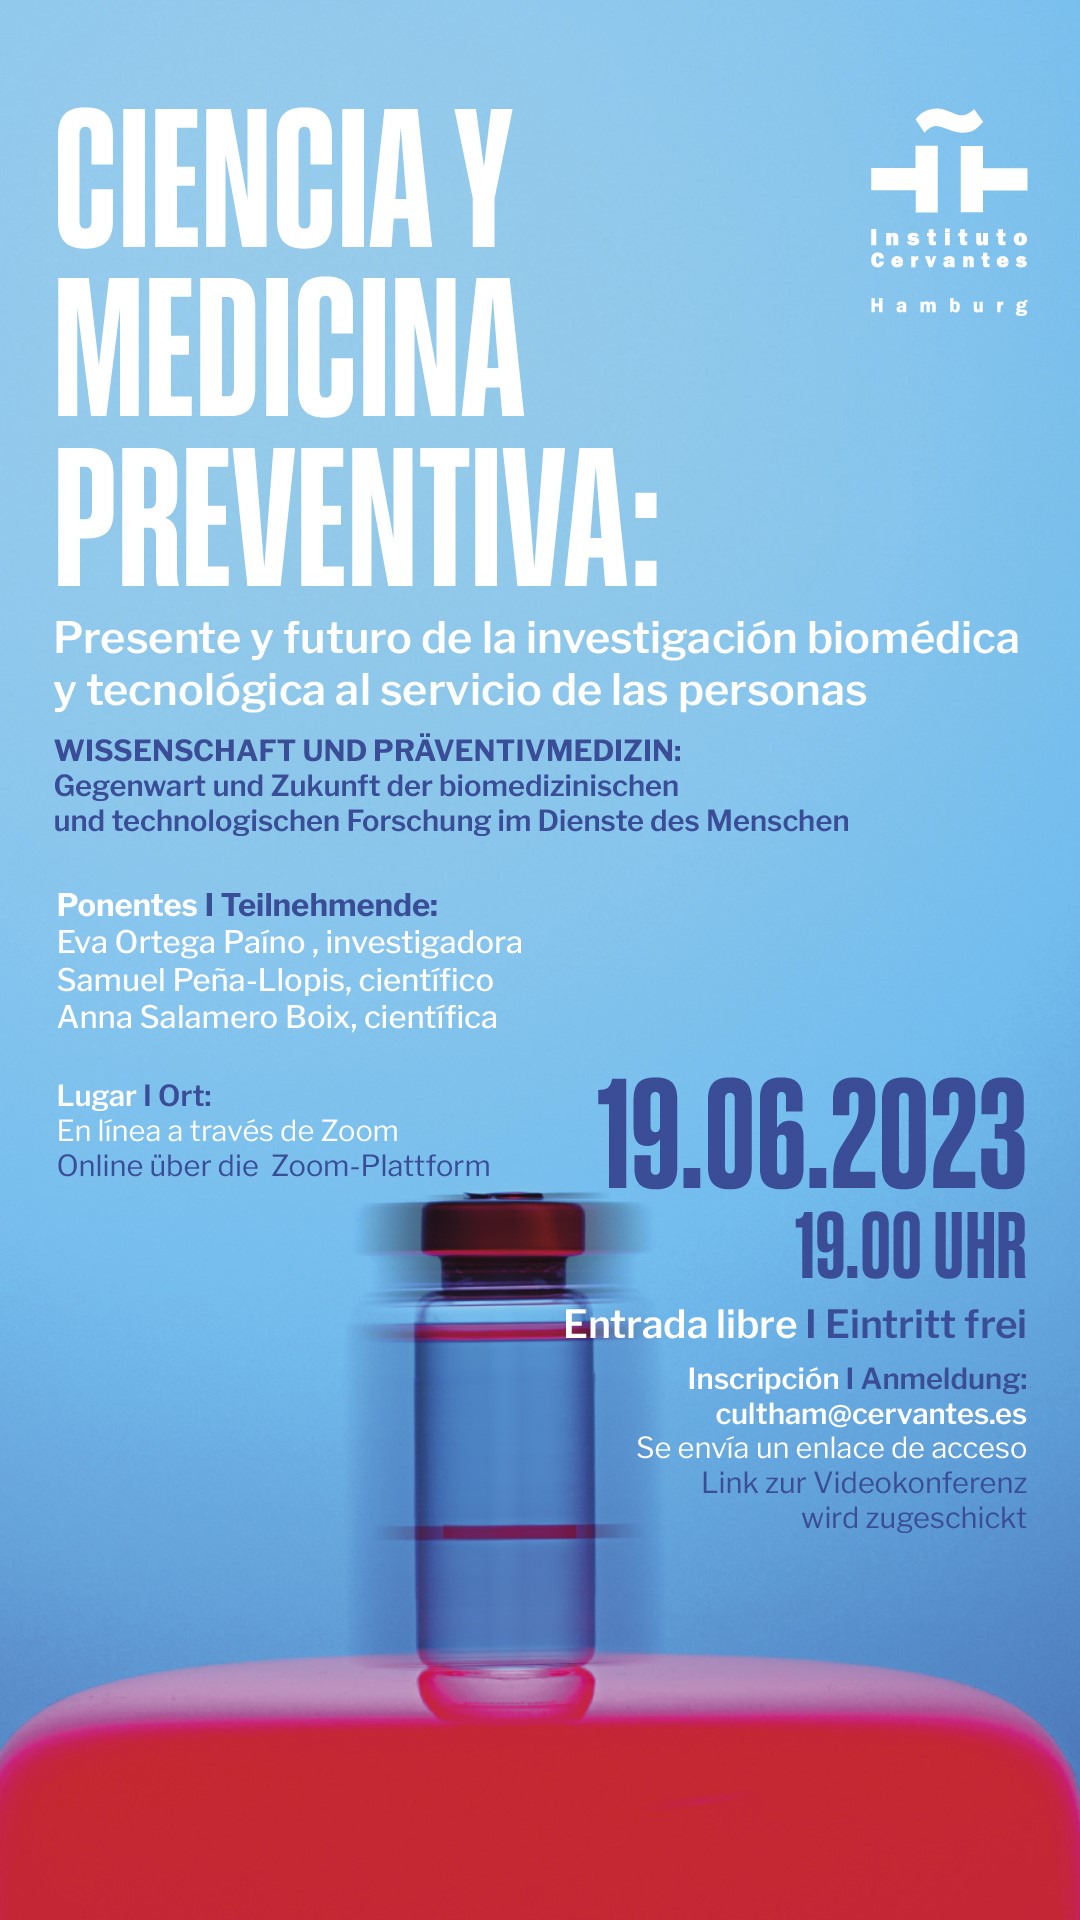 Wissenschaft und Präventivmedizin: Gegenwart und Zukunft der biomedizinischen und technologischen Forschung im Dienste des Menschen